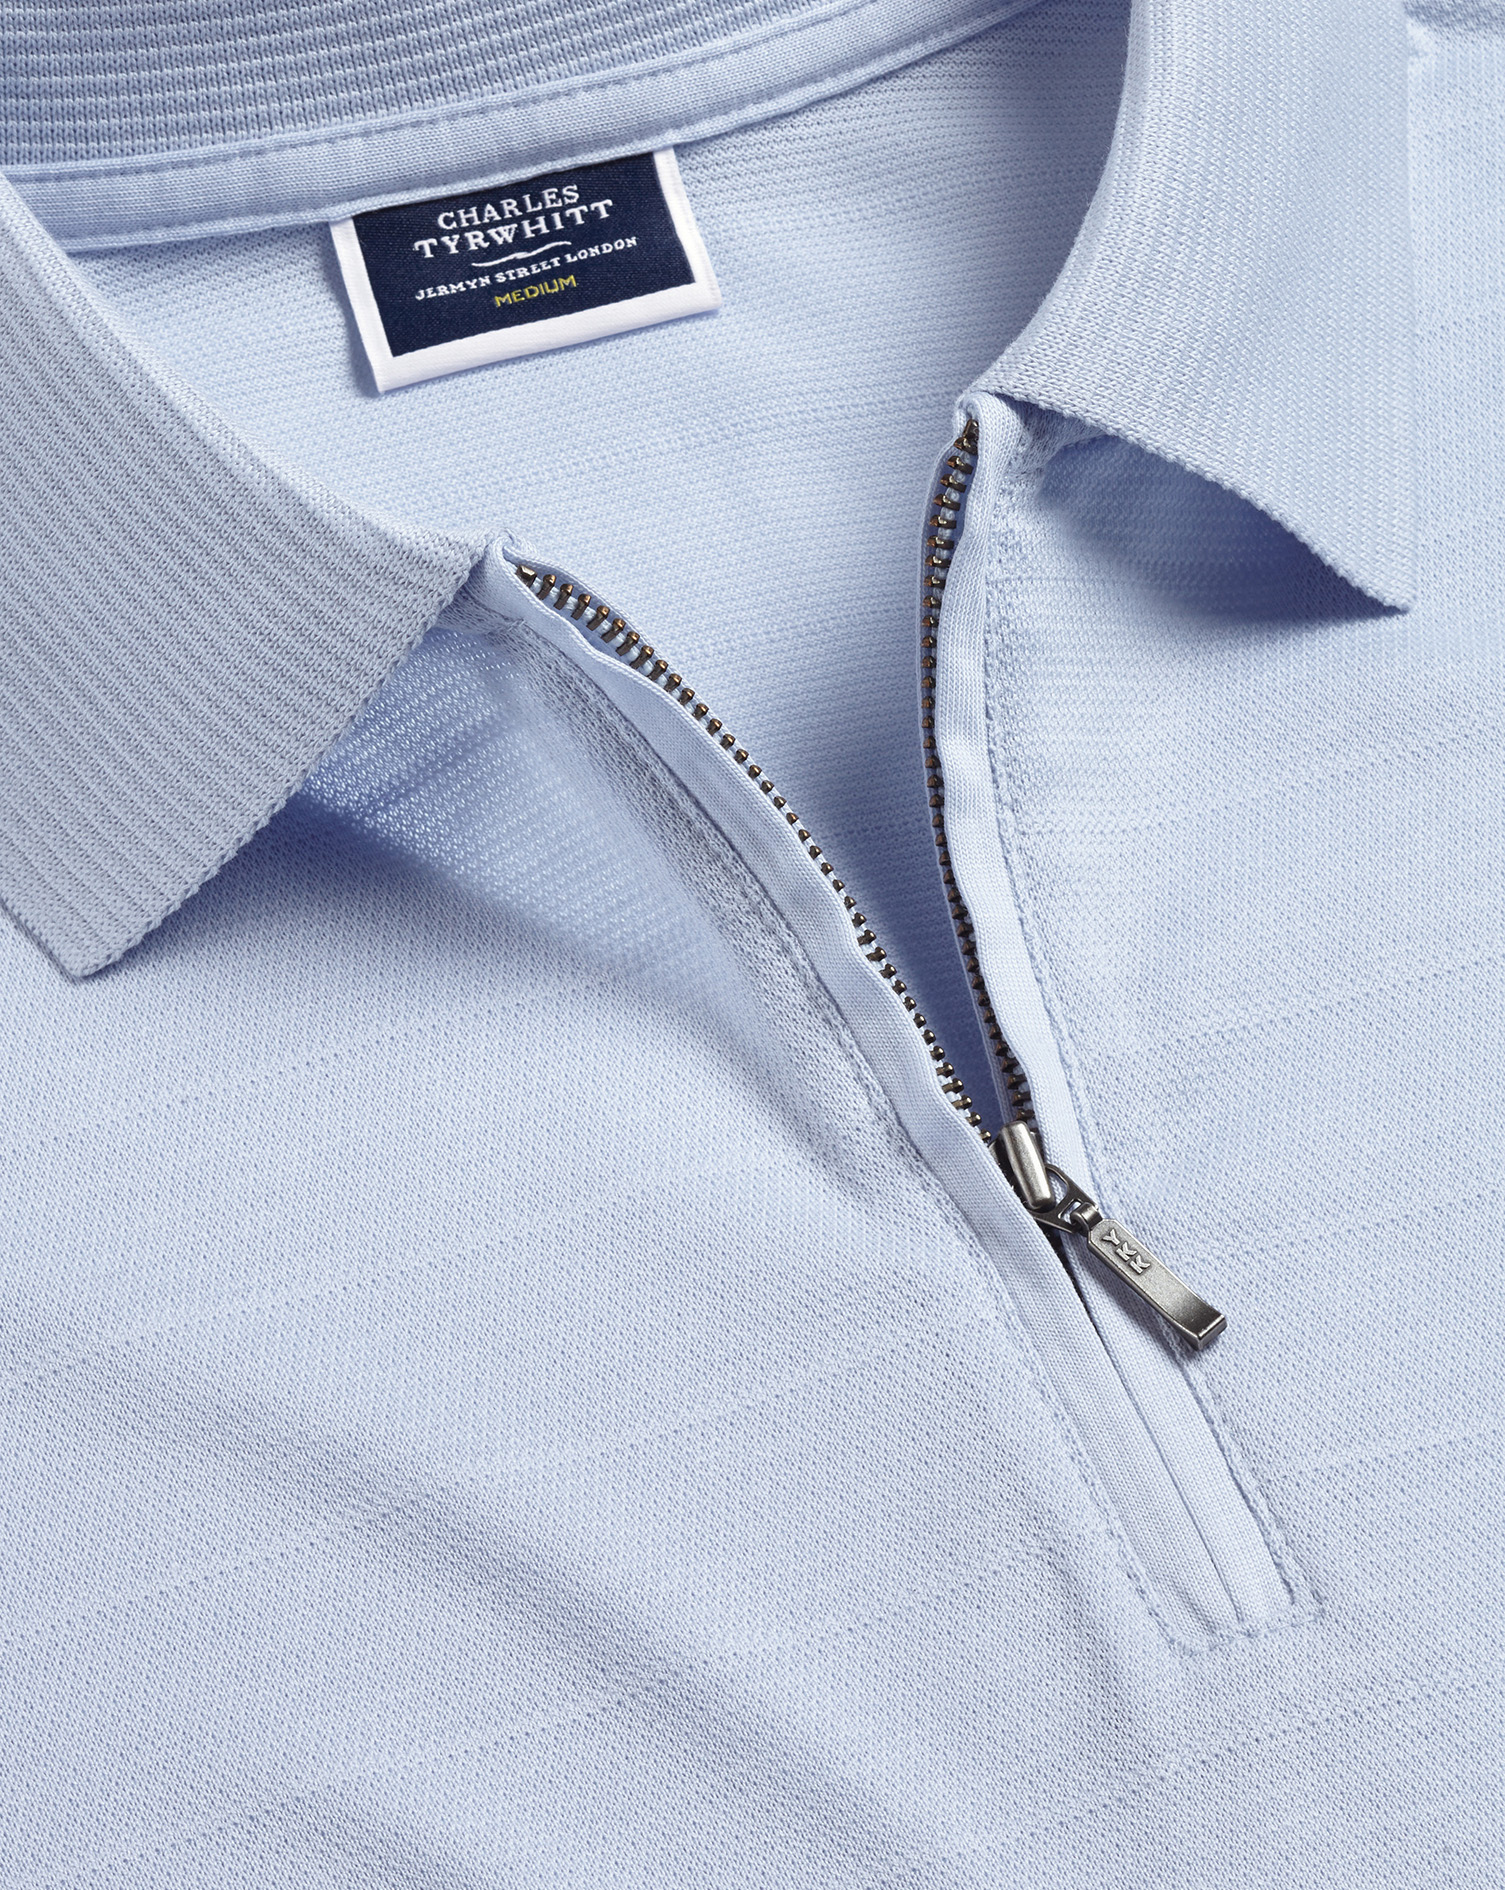 Men's Charles Tyrwhitt Cool Zip-Neck Polo Shirt - Light Blue Size XXXL Cotton
